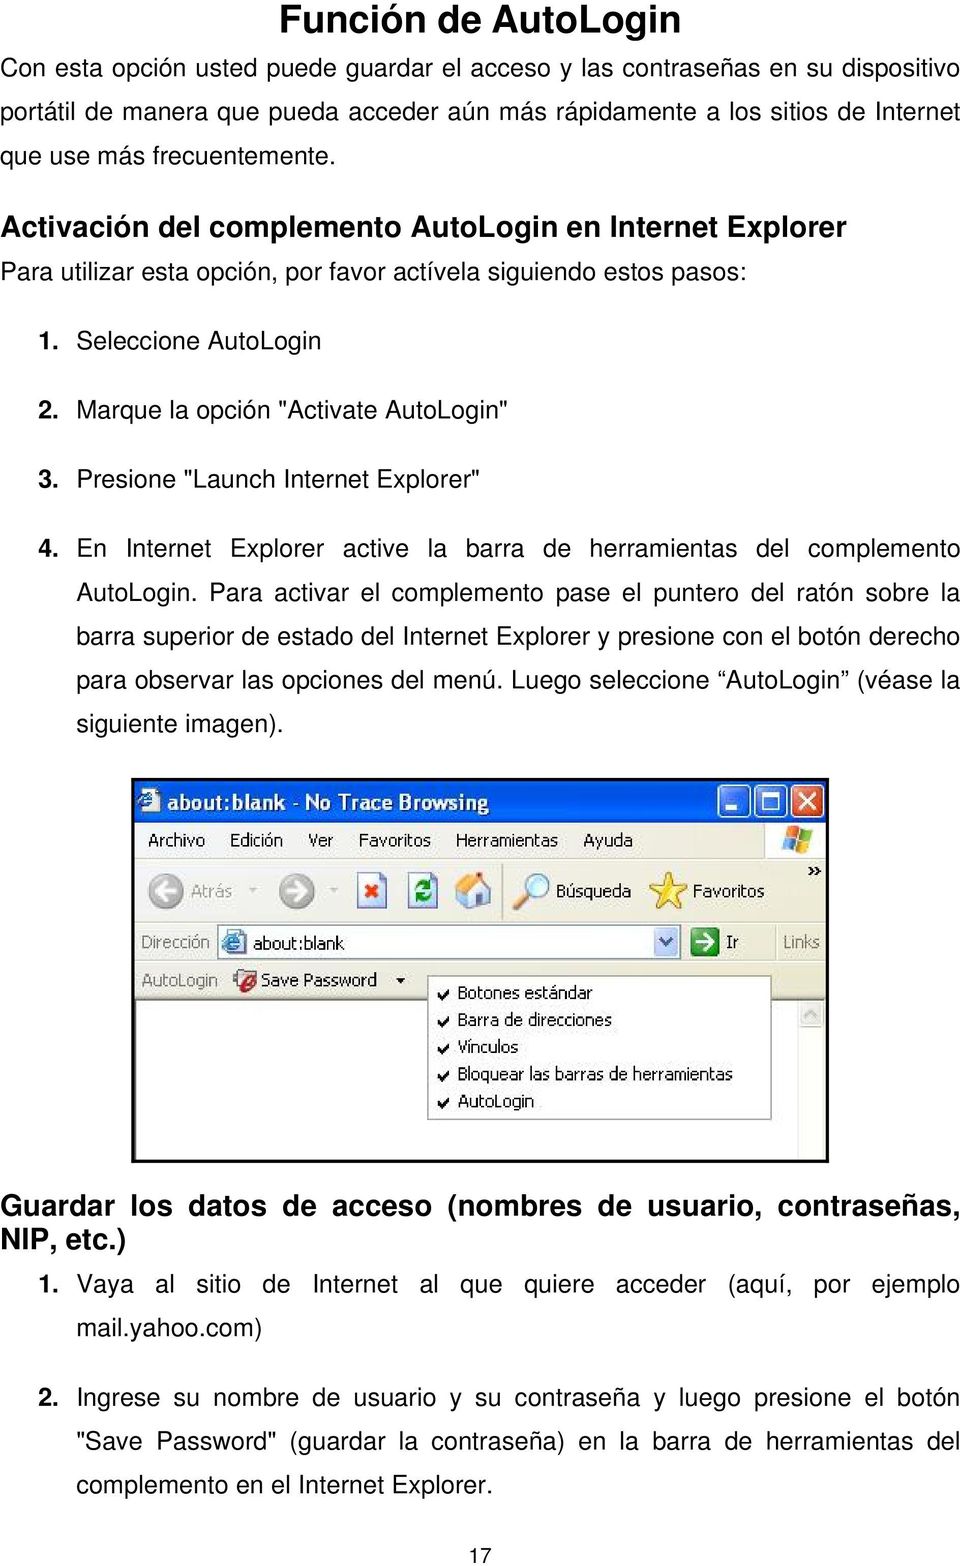 Marque la opción "Activate AutoLogin" 3. Presione "Launch Internet Explorer" 4. En Internet Explorer active la barra de herramientas del complemento AutoLogin.